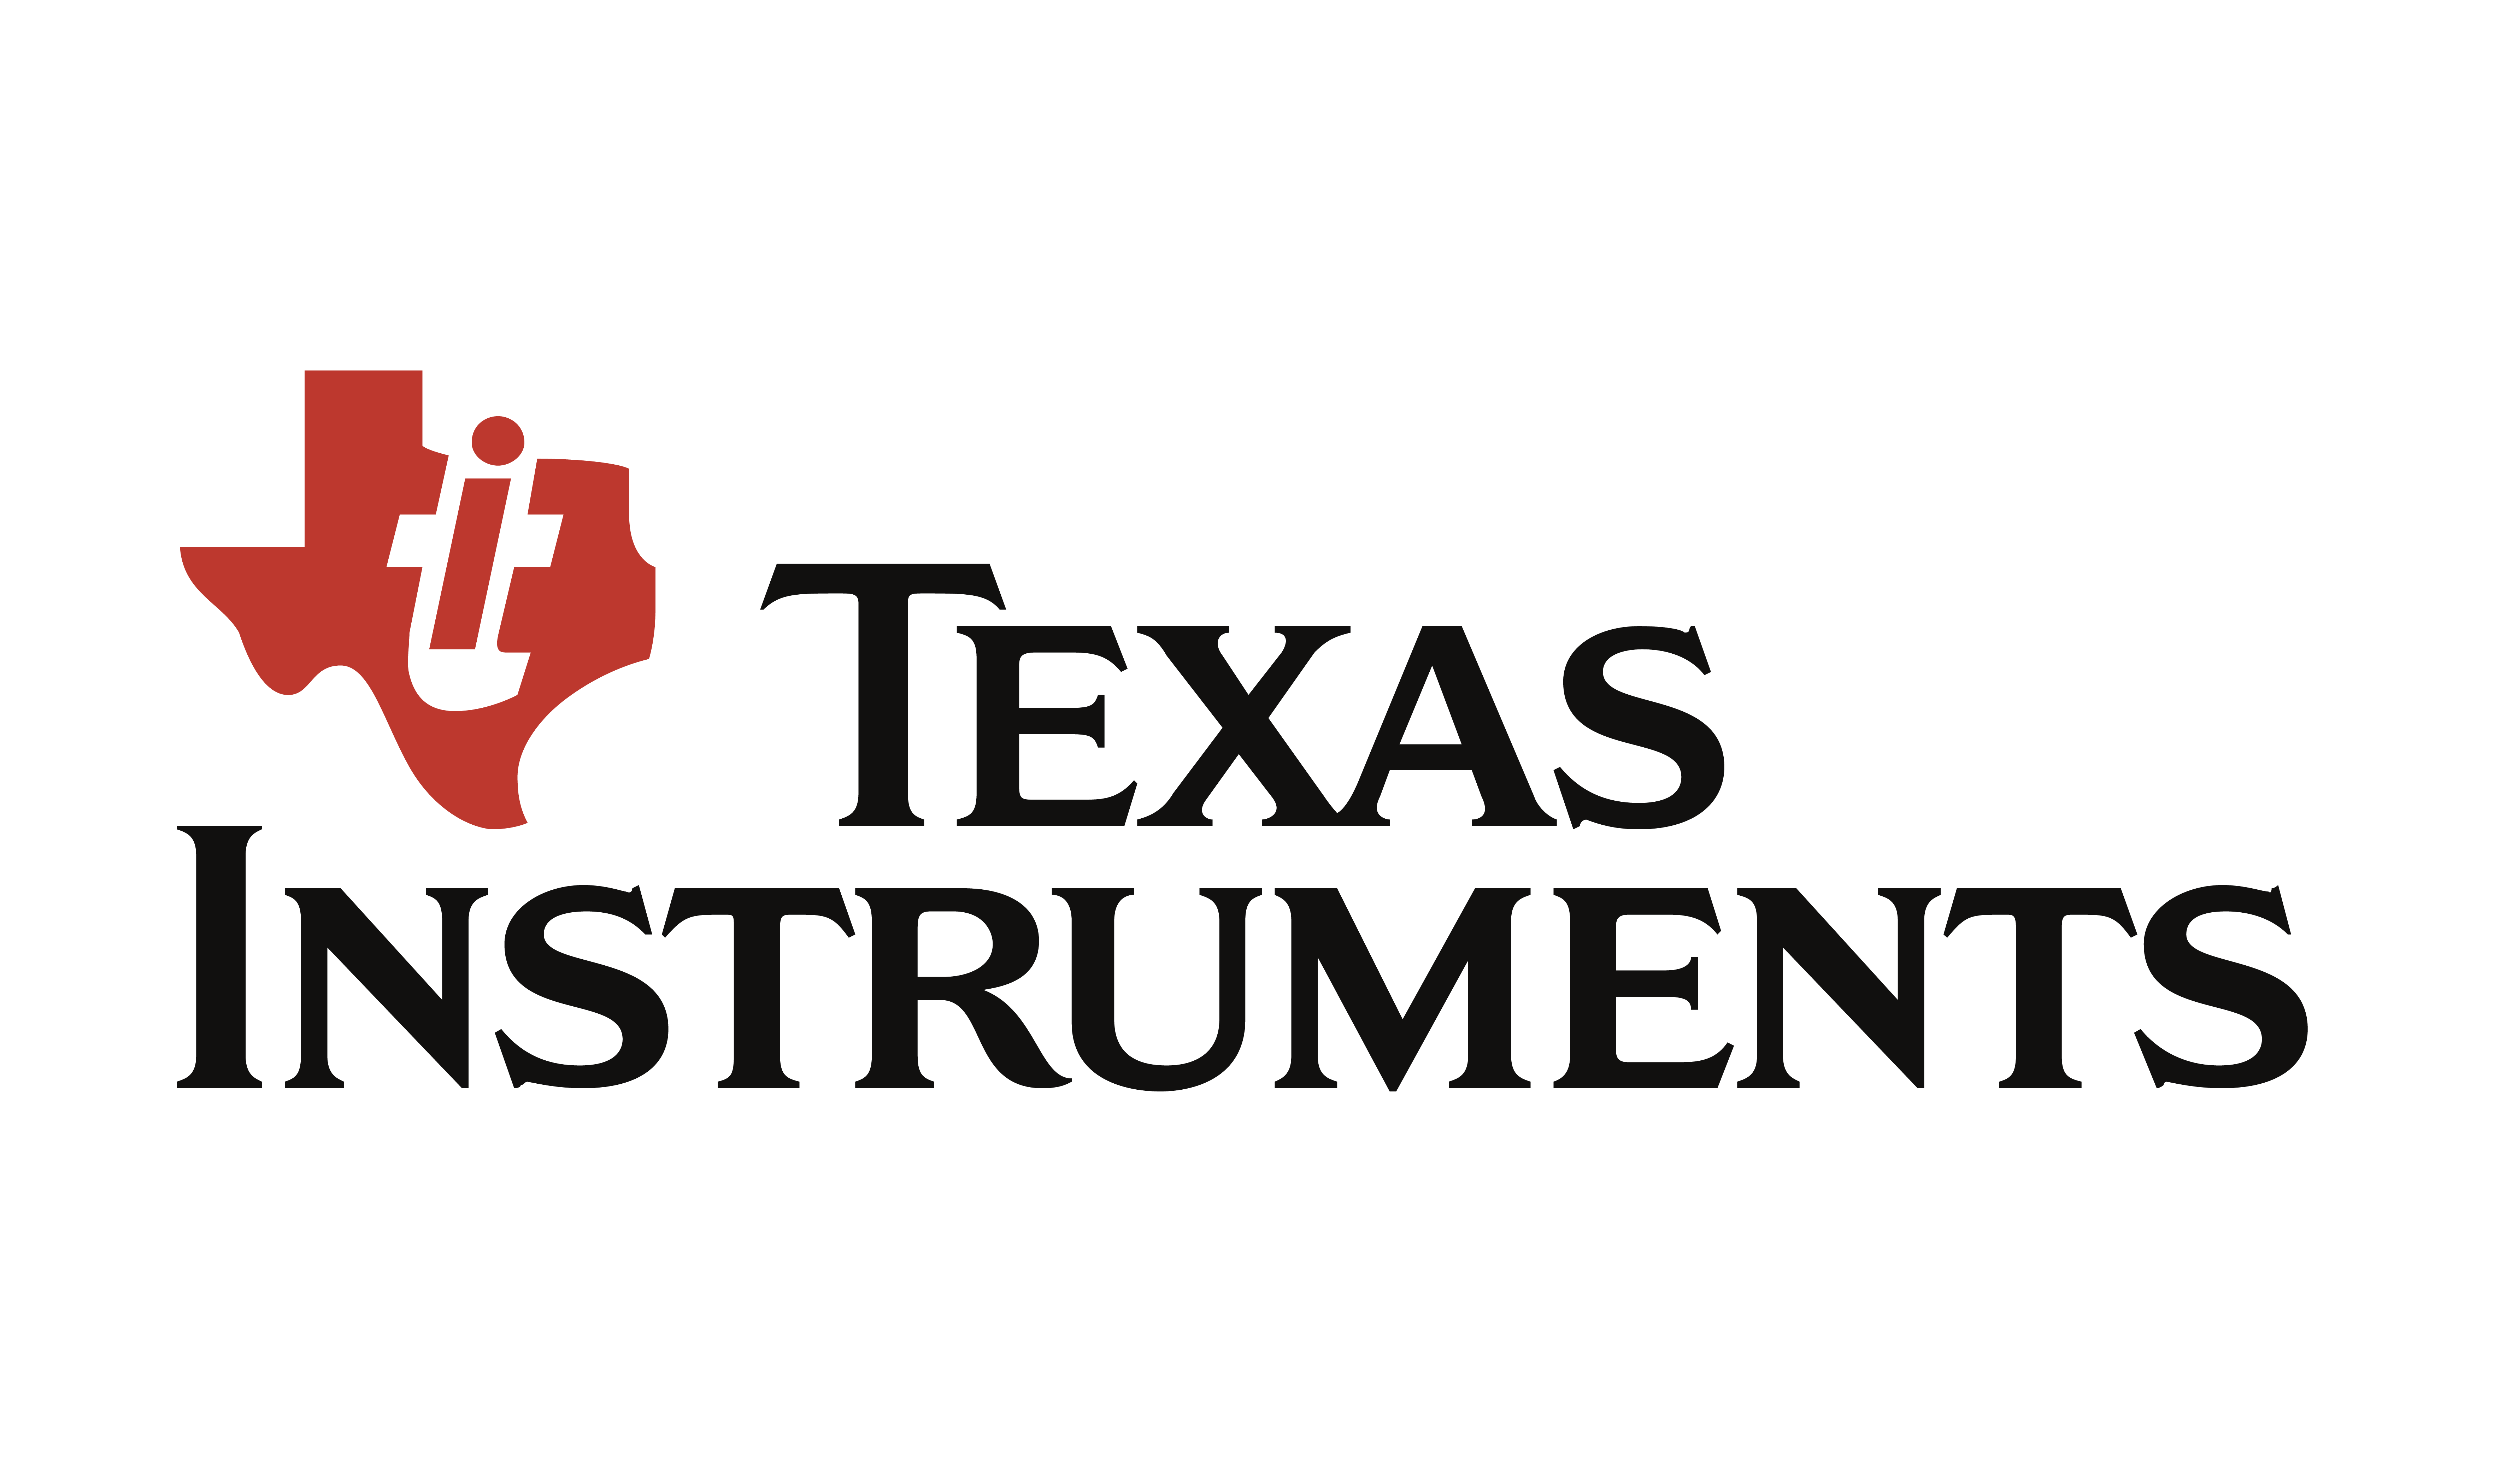 Texas Instruments Innovation Lab